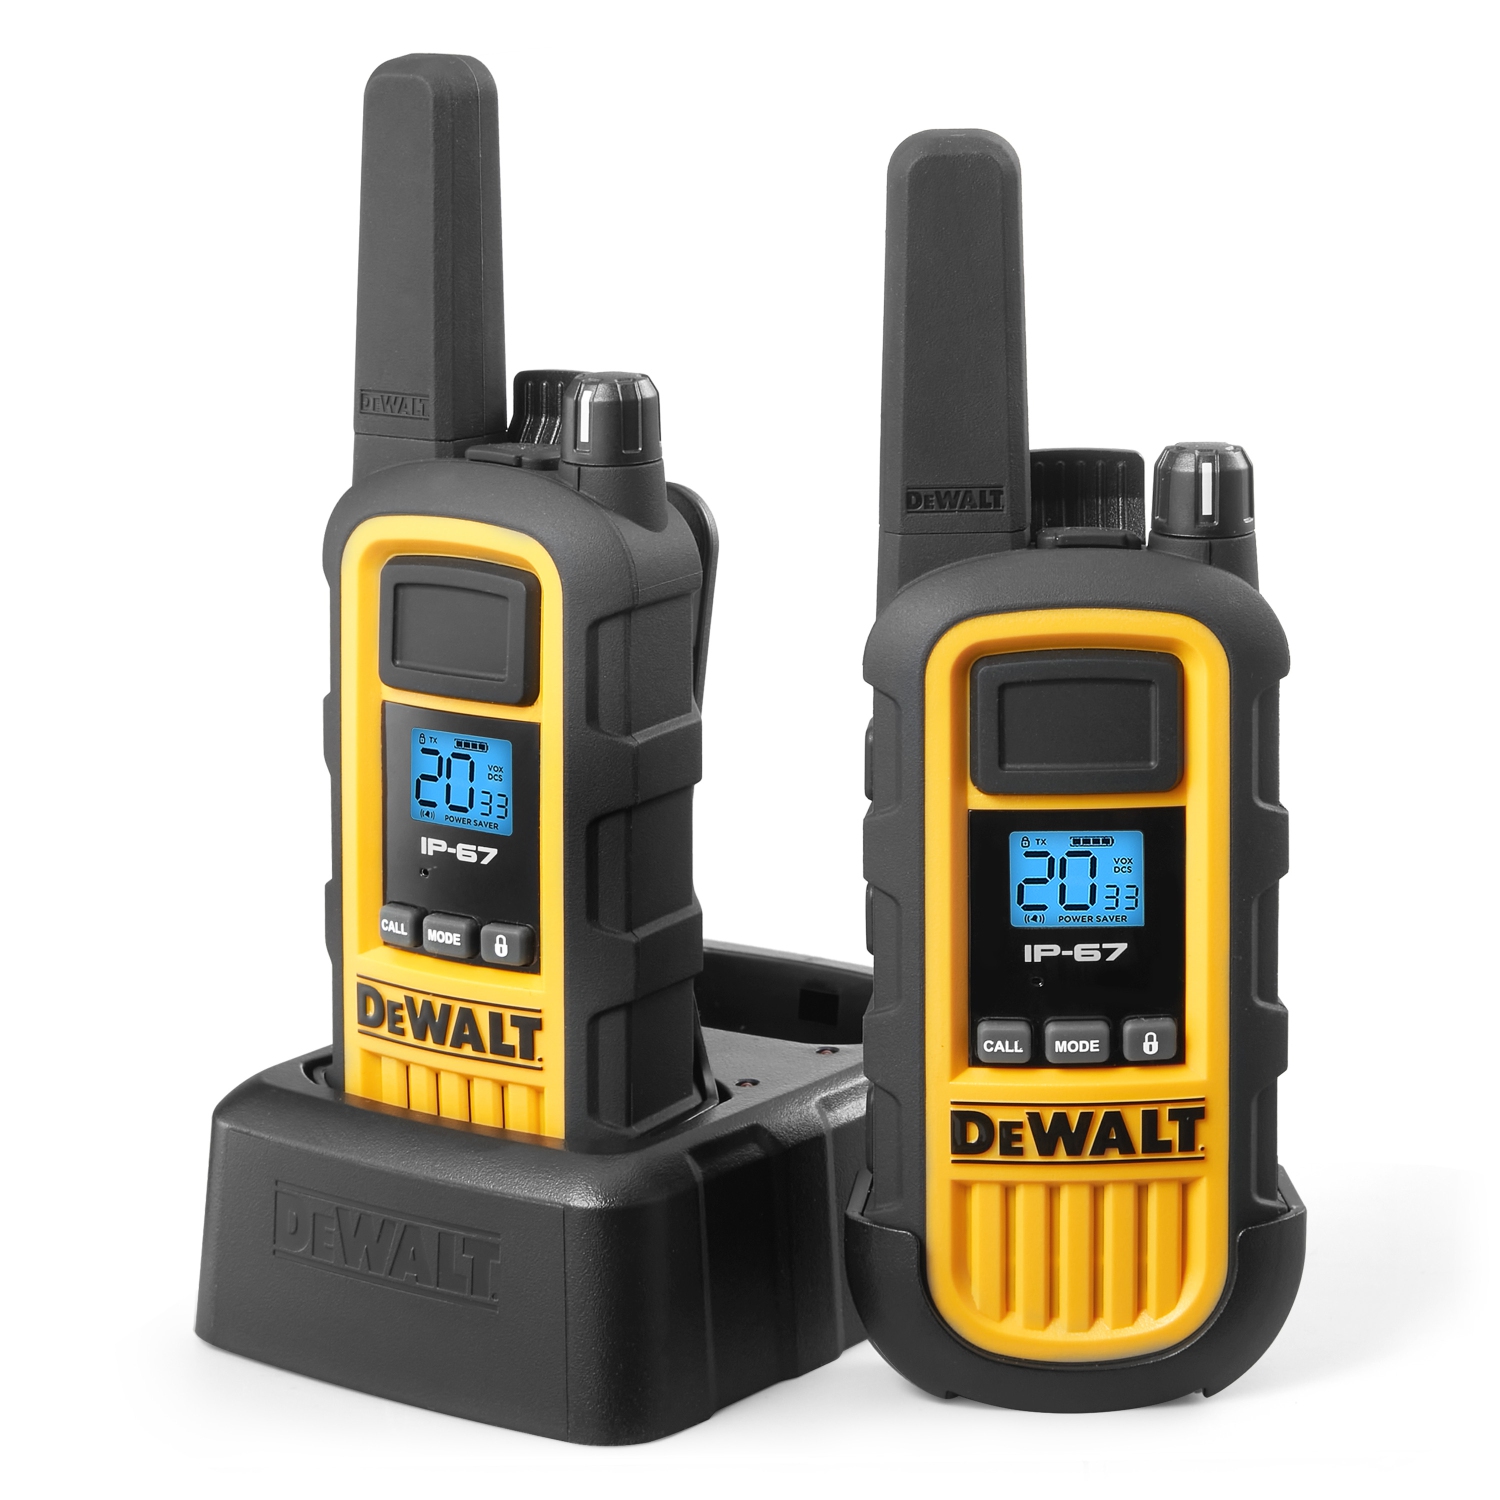 DEWALT DXFRS800 (7084946) 2 Watt Heavy Duty Walkie Talkies - Waterproof, Shock Resistant, Long Range & Rechargeable Two-Way Radio with VOX (2 Pack)